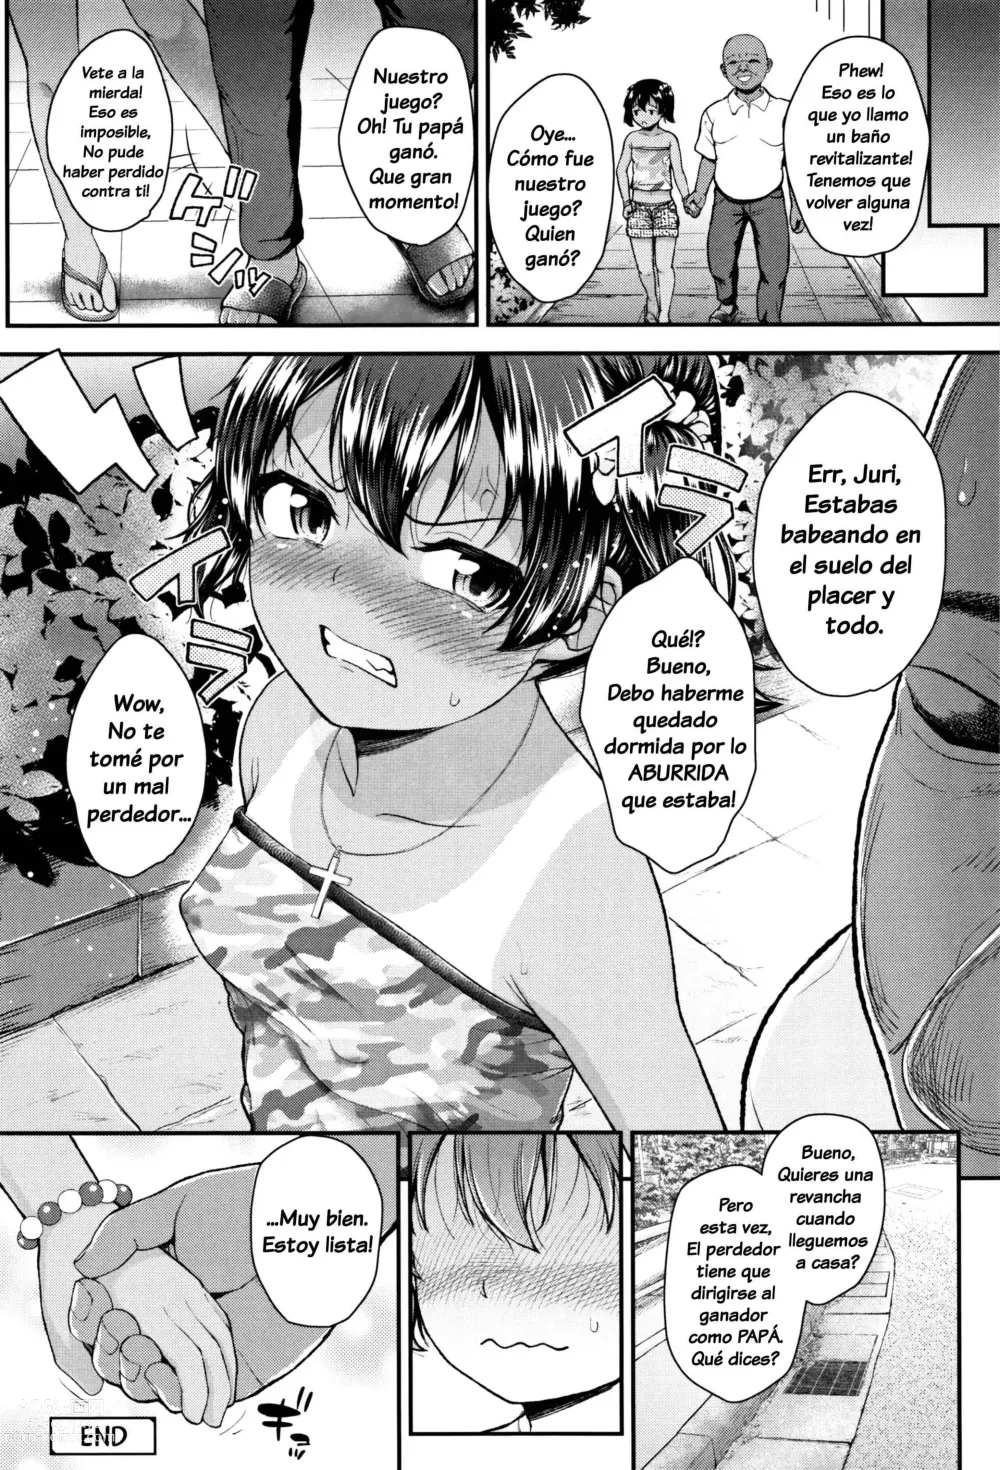 Page 49 of manga Tsungire + Tsungire After